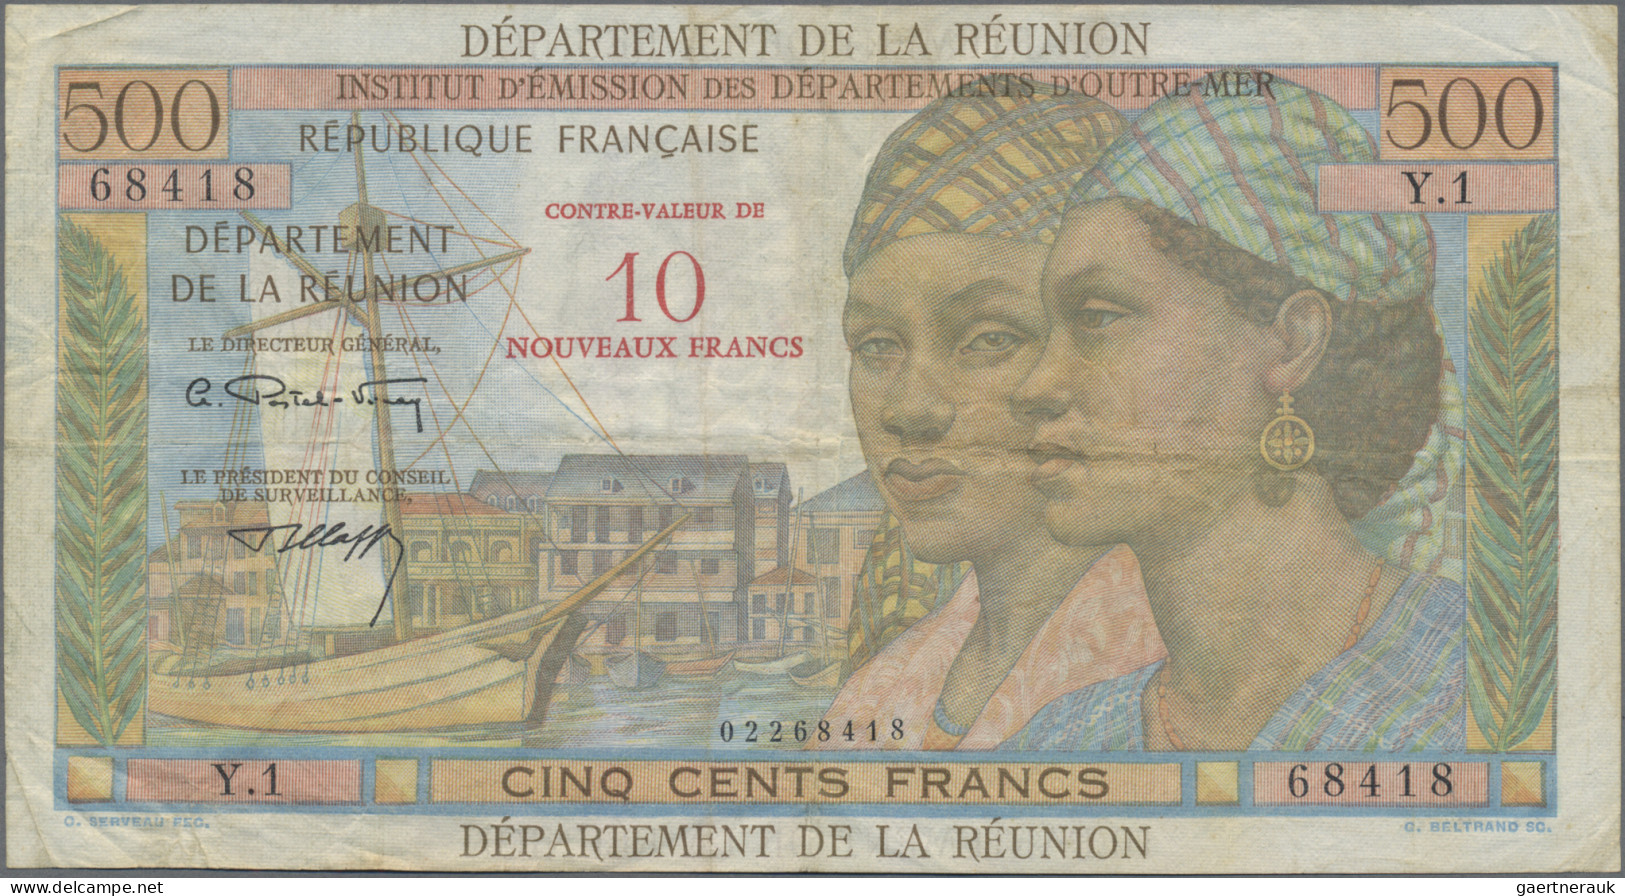 Réunion: Institut D'Émission Des Départements D'Outre-Mer – REUNION, Pair With 1 - Réunion